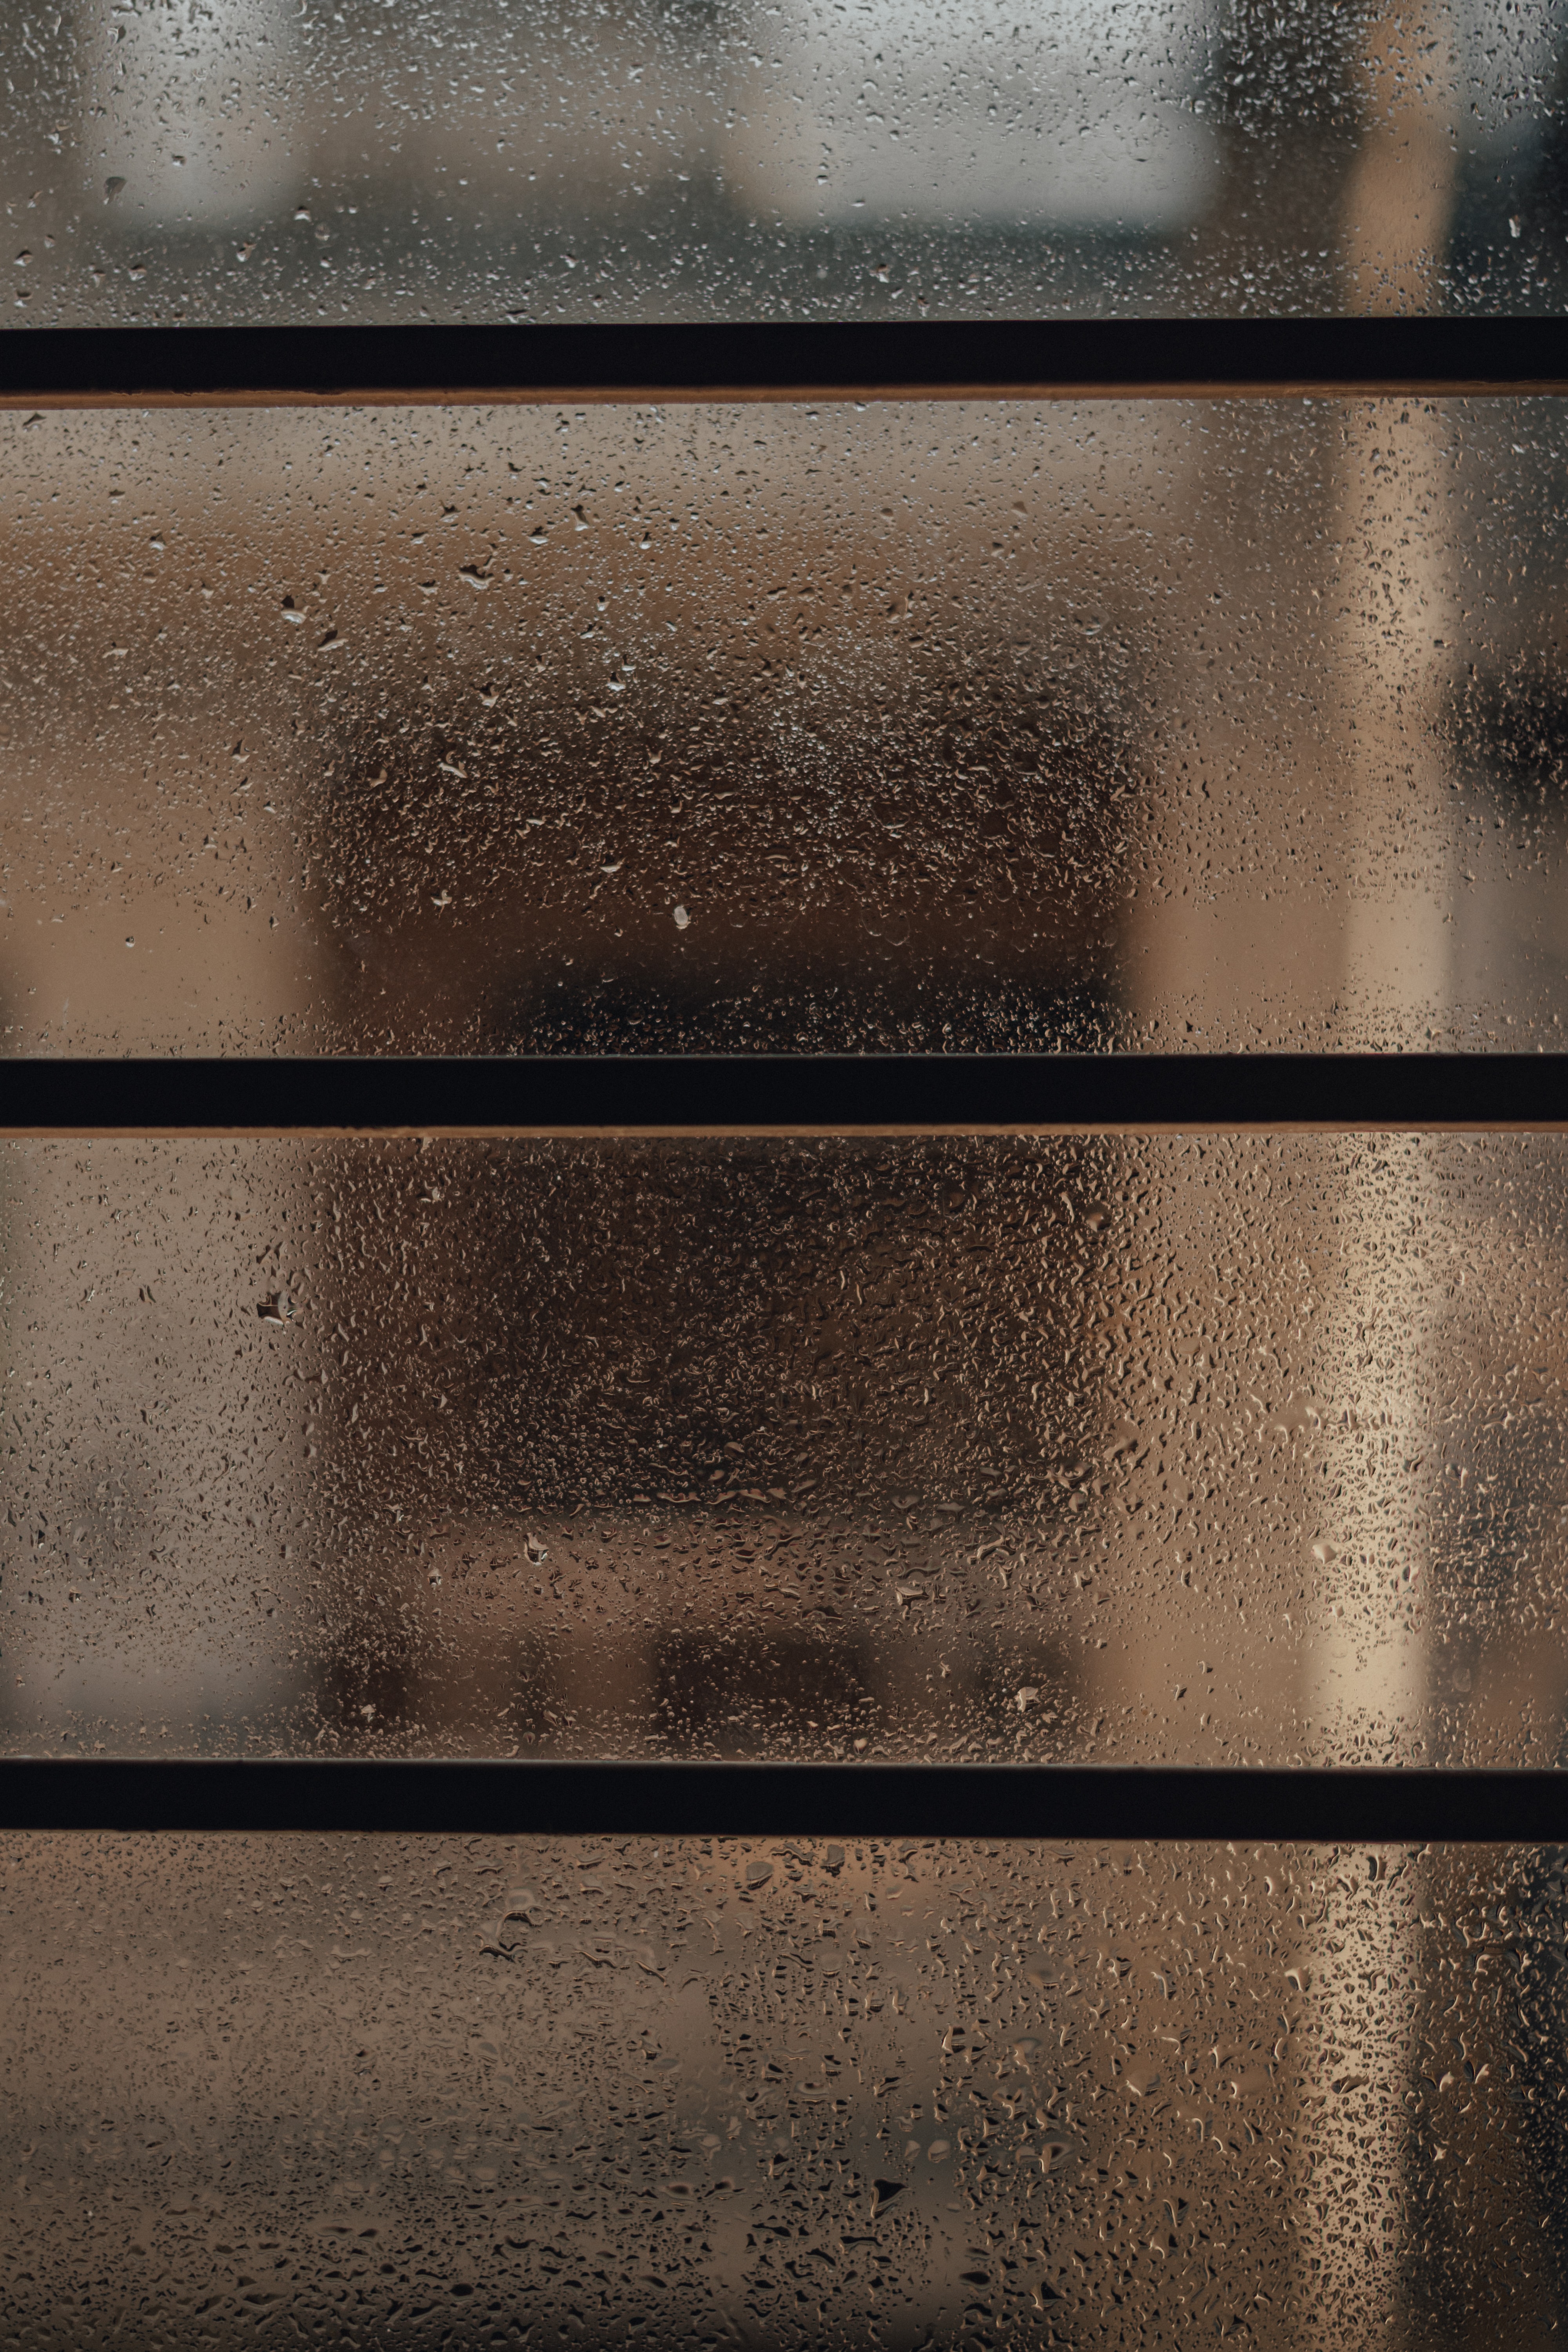 moisture, rain, drops, miscellanea, miscellaneous, glass, window